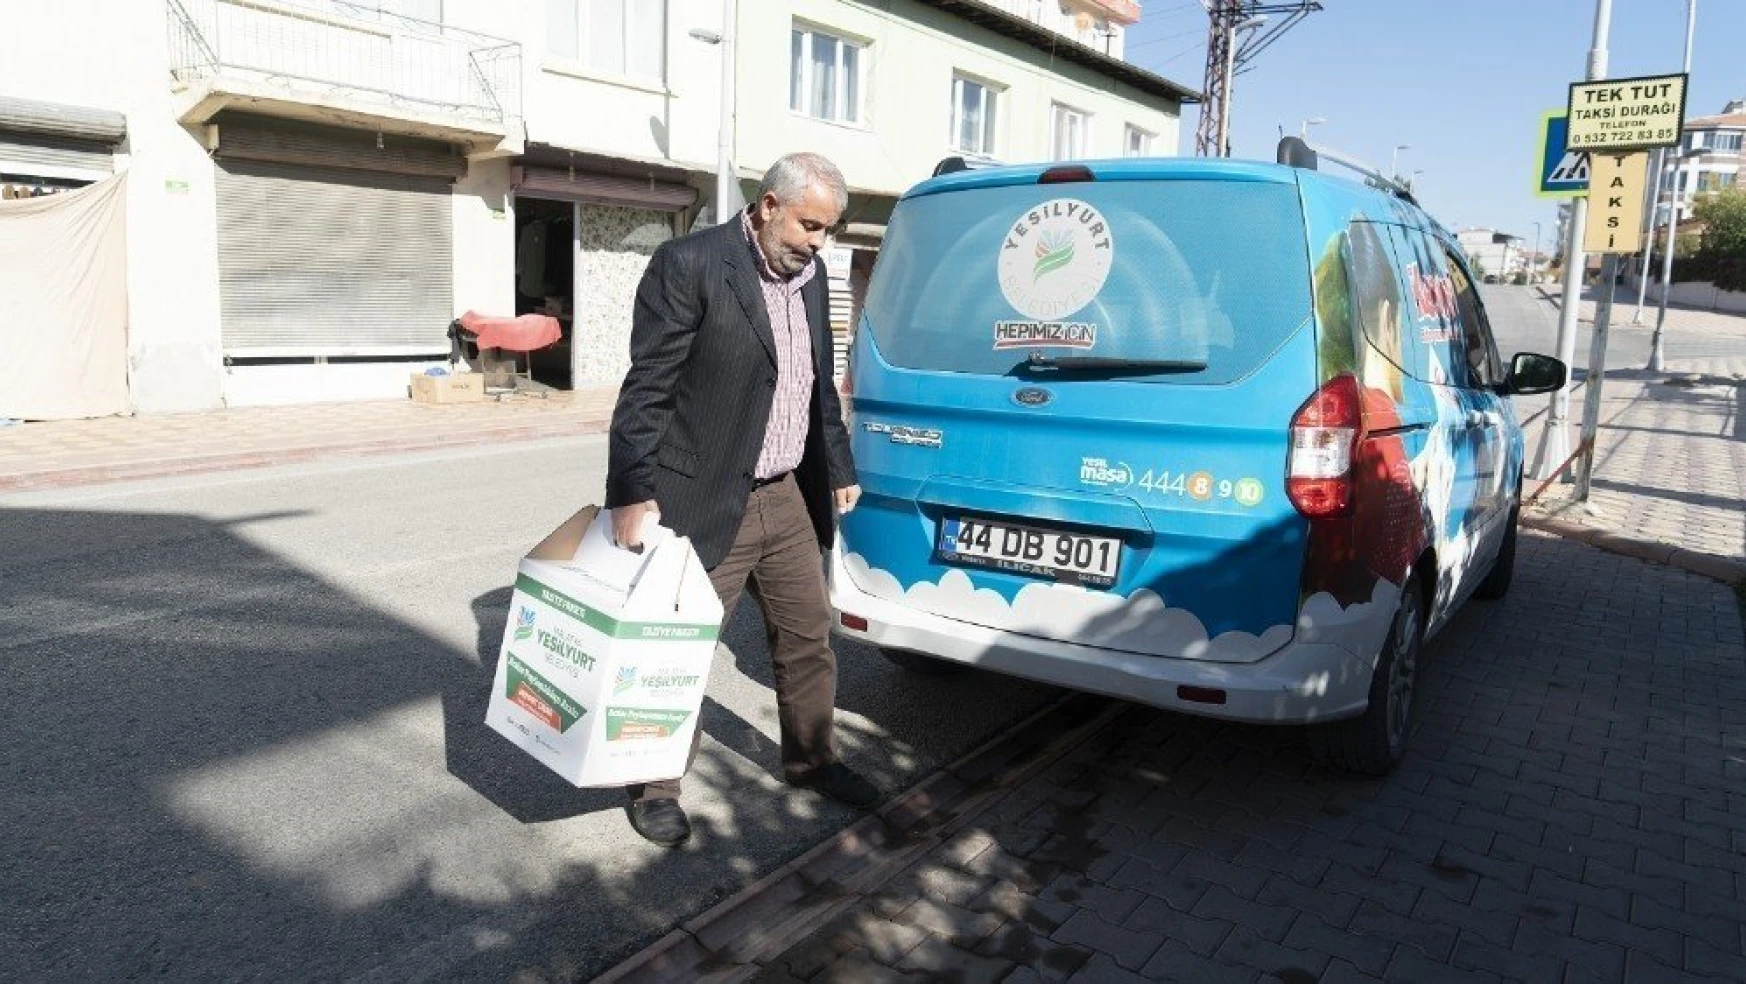 Yeşilyurt Belediyesi 'Taziye Paketi' projesiyle vatandaşların acısını paylaşıyor